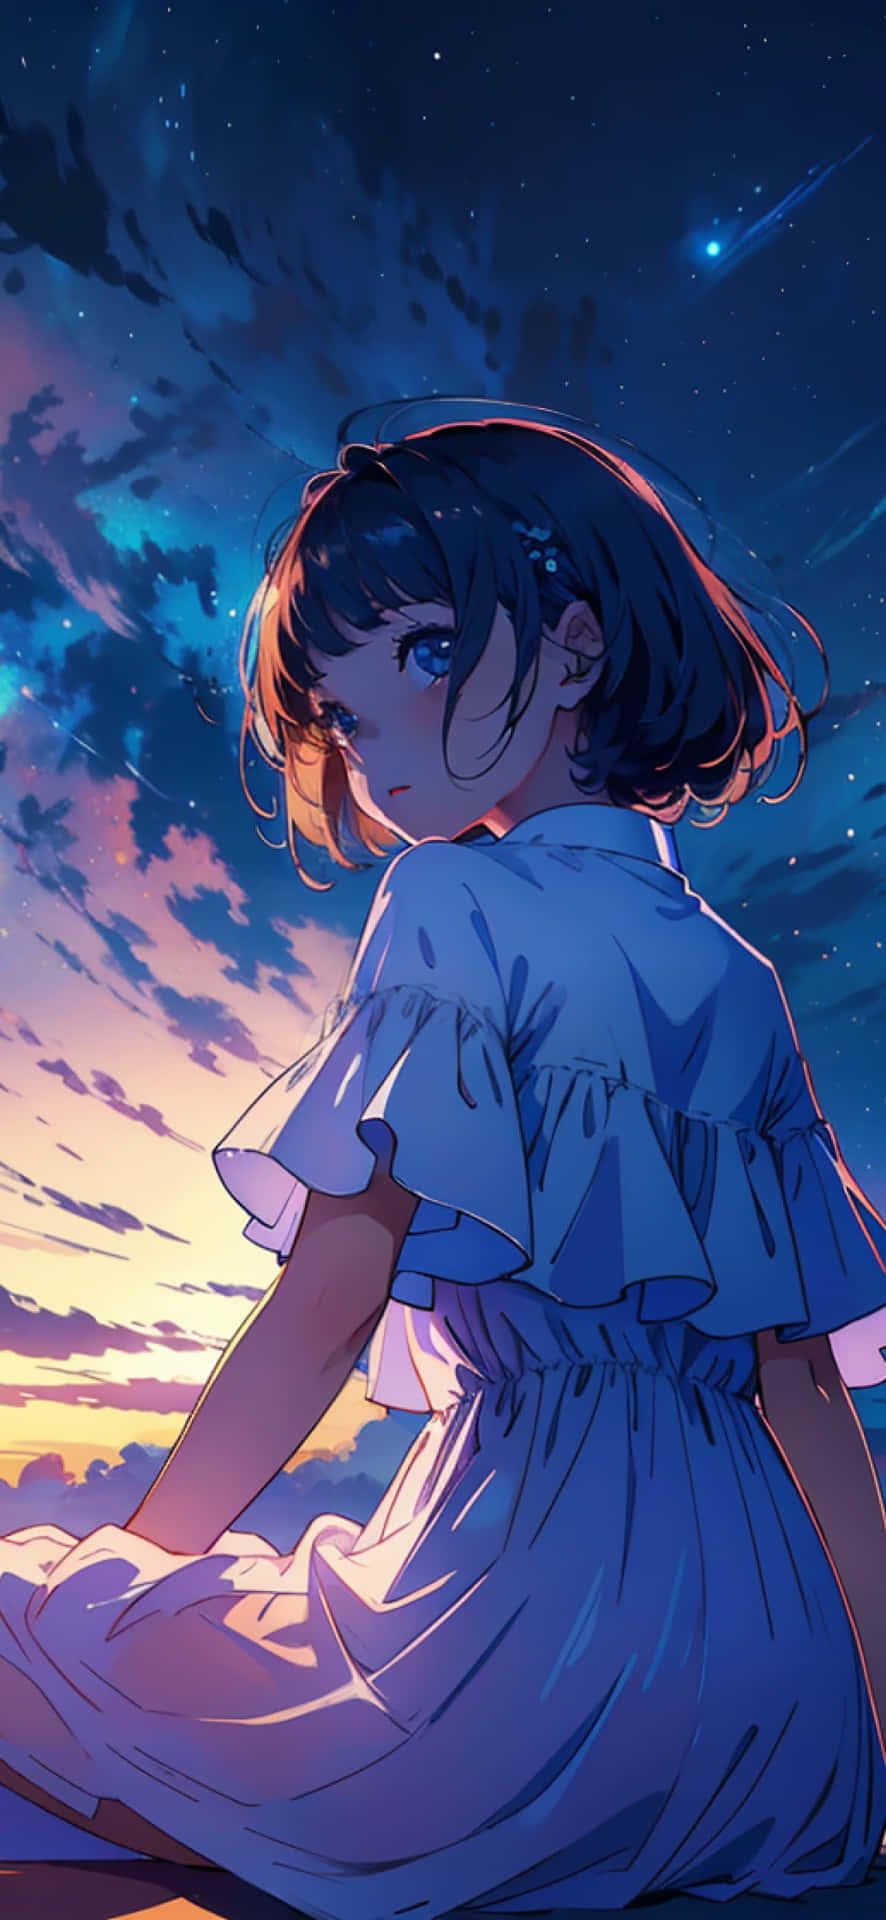 Starry Night Anime Girl Wallpaper